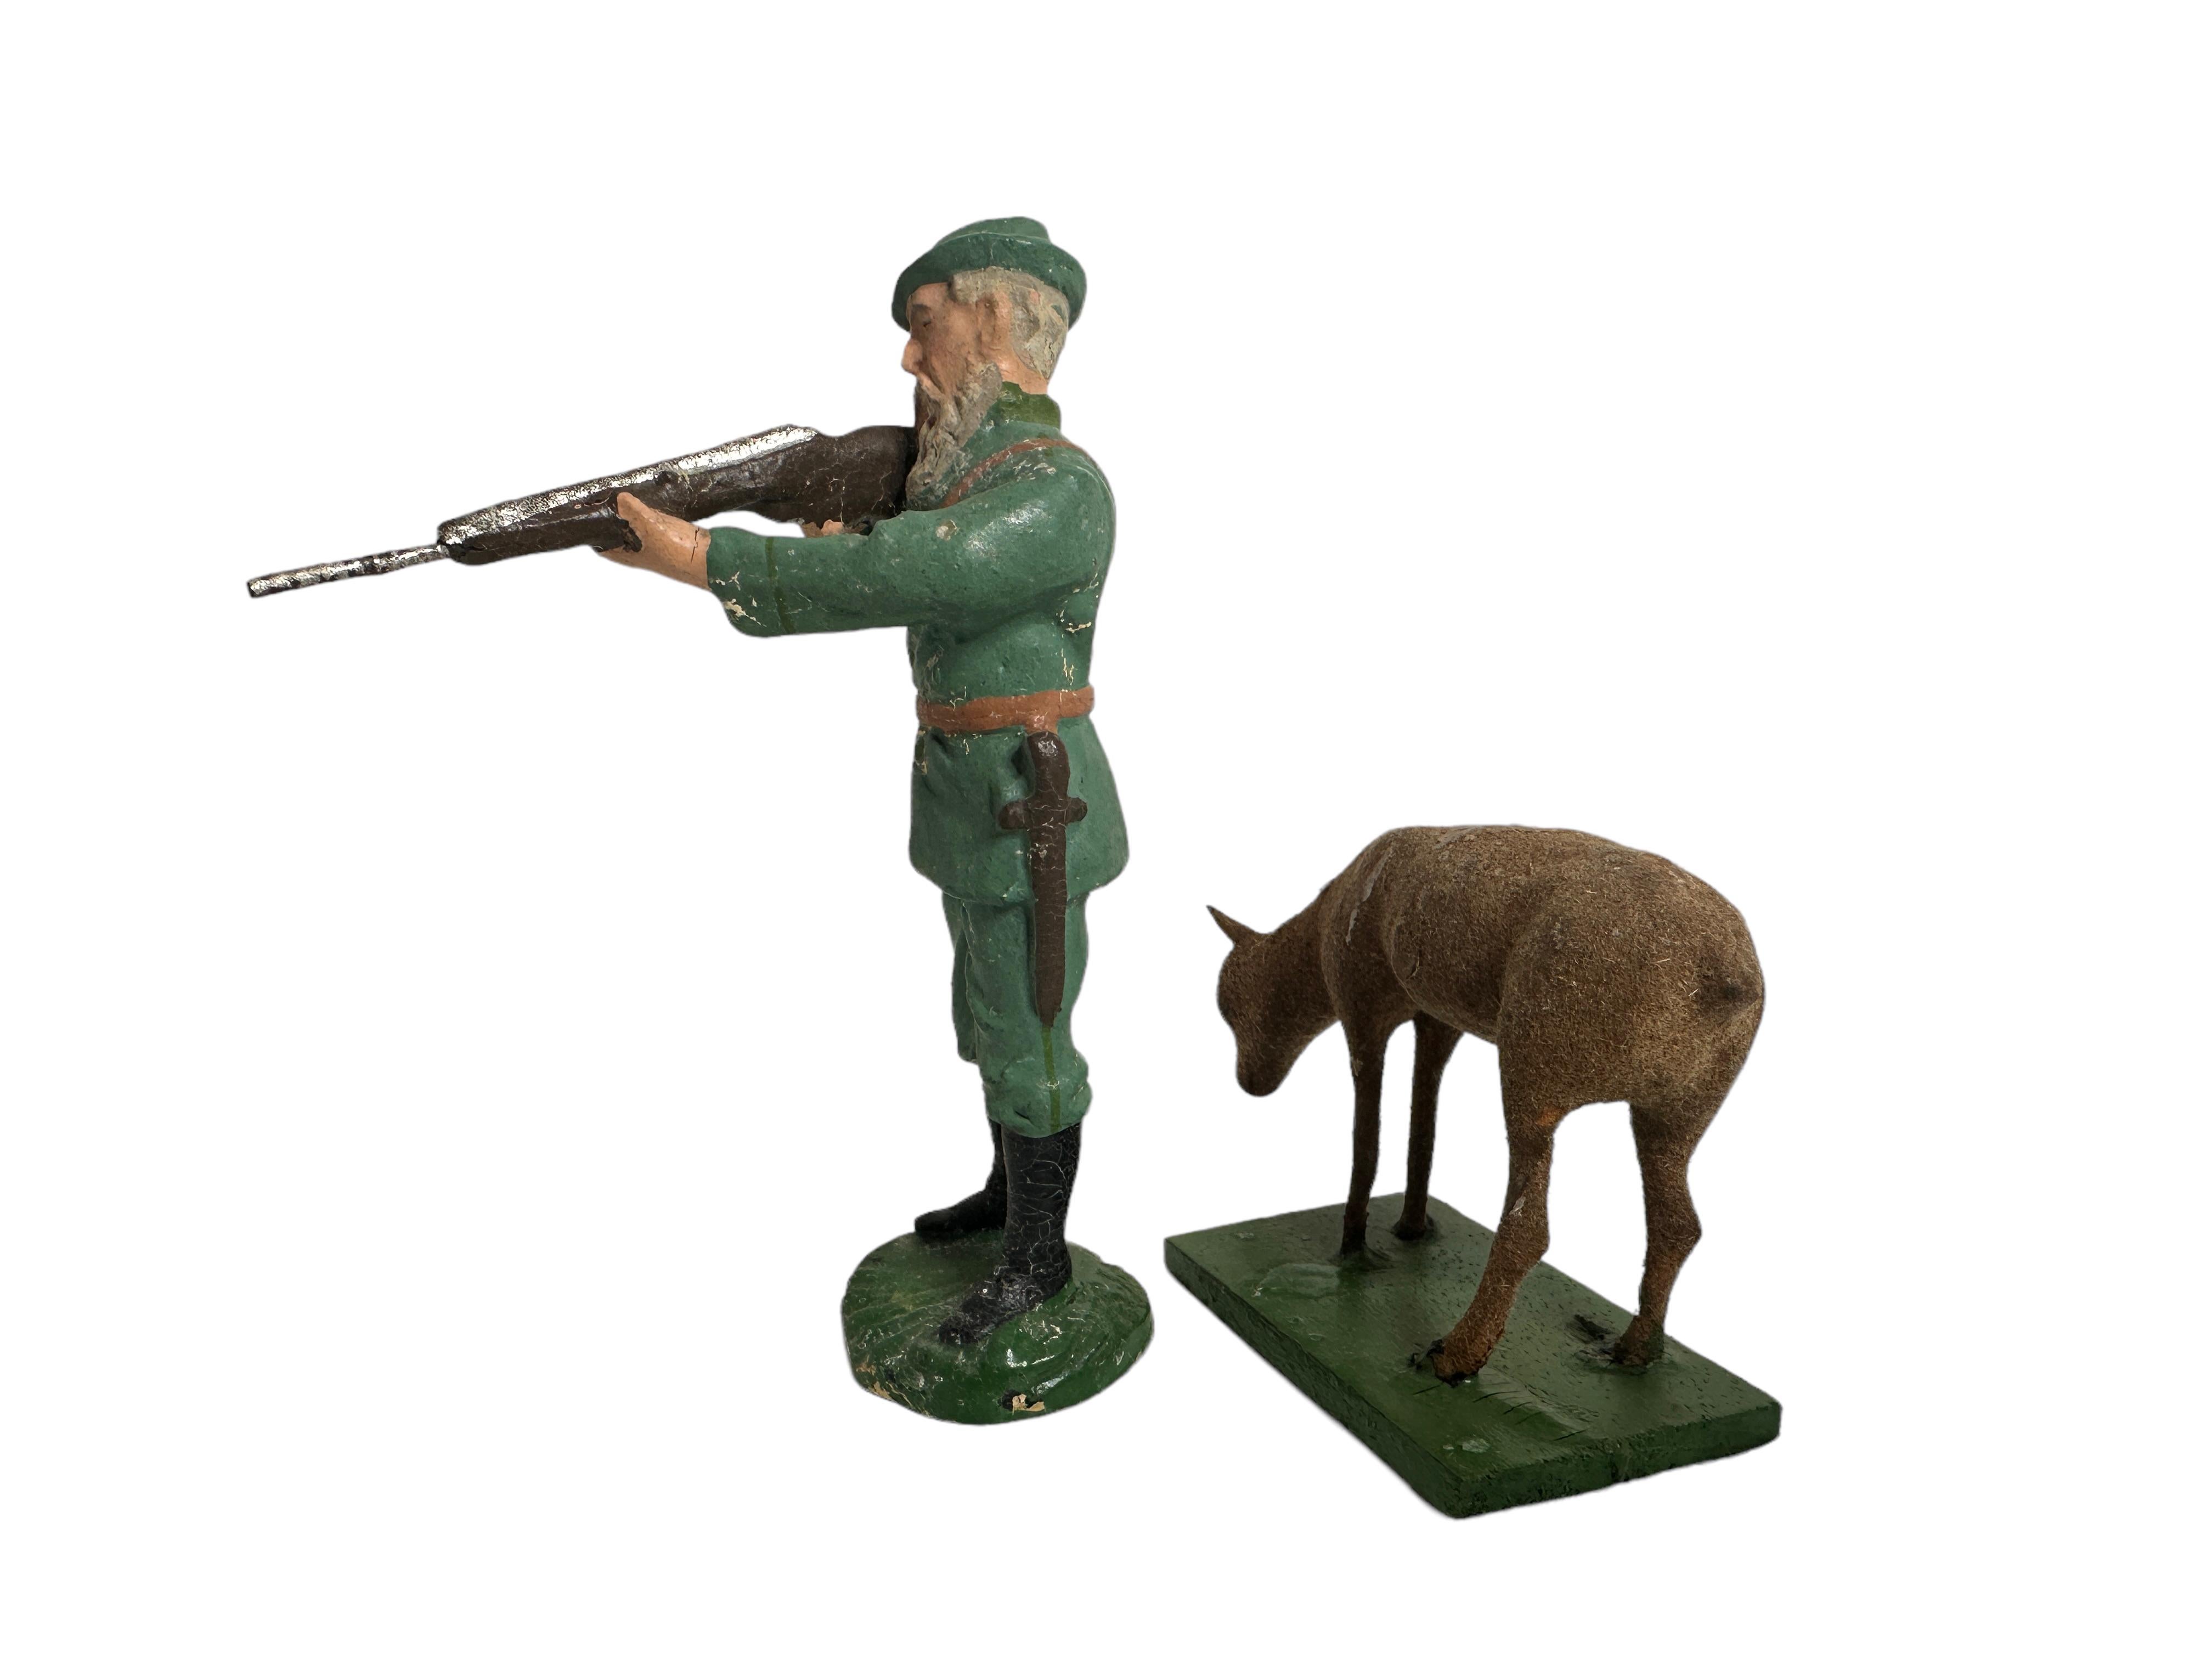 Lot of Five Deer & Hunter Putz Toy Antique German Erzgebirge Christmas 1880s For Sale 2